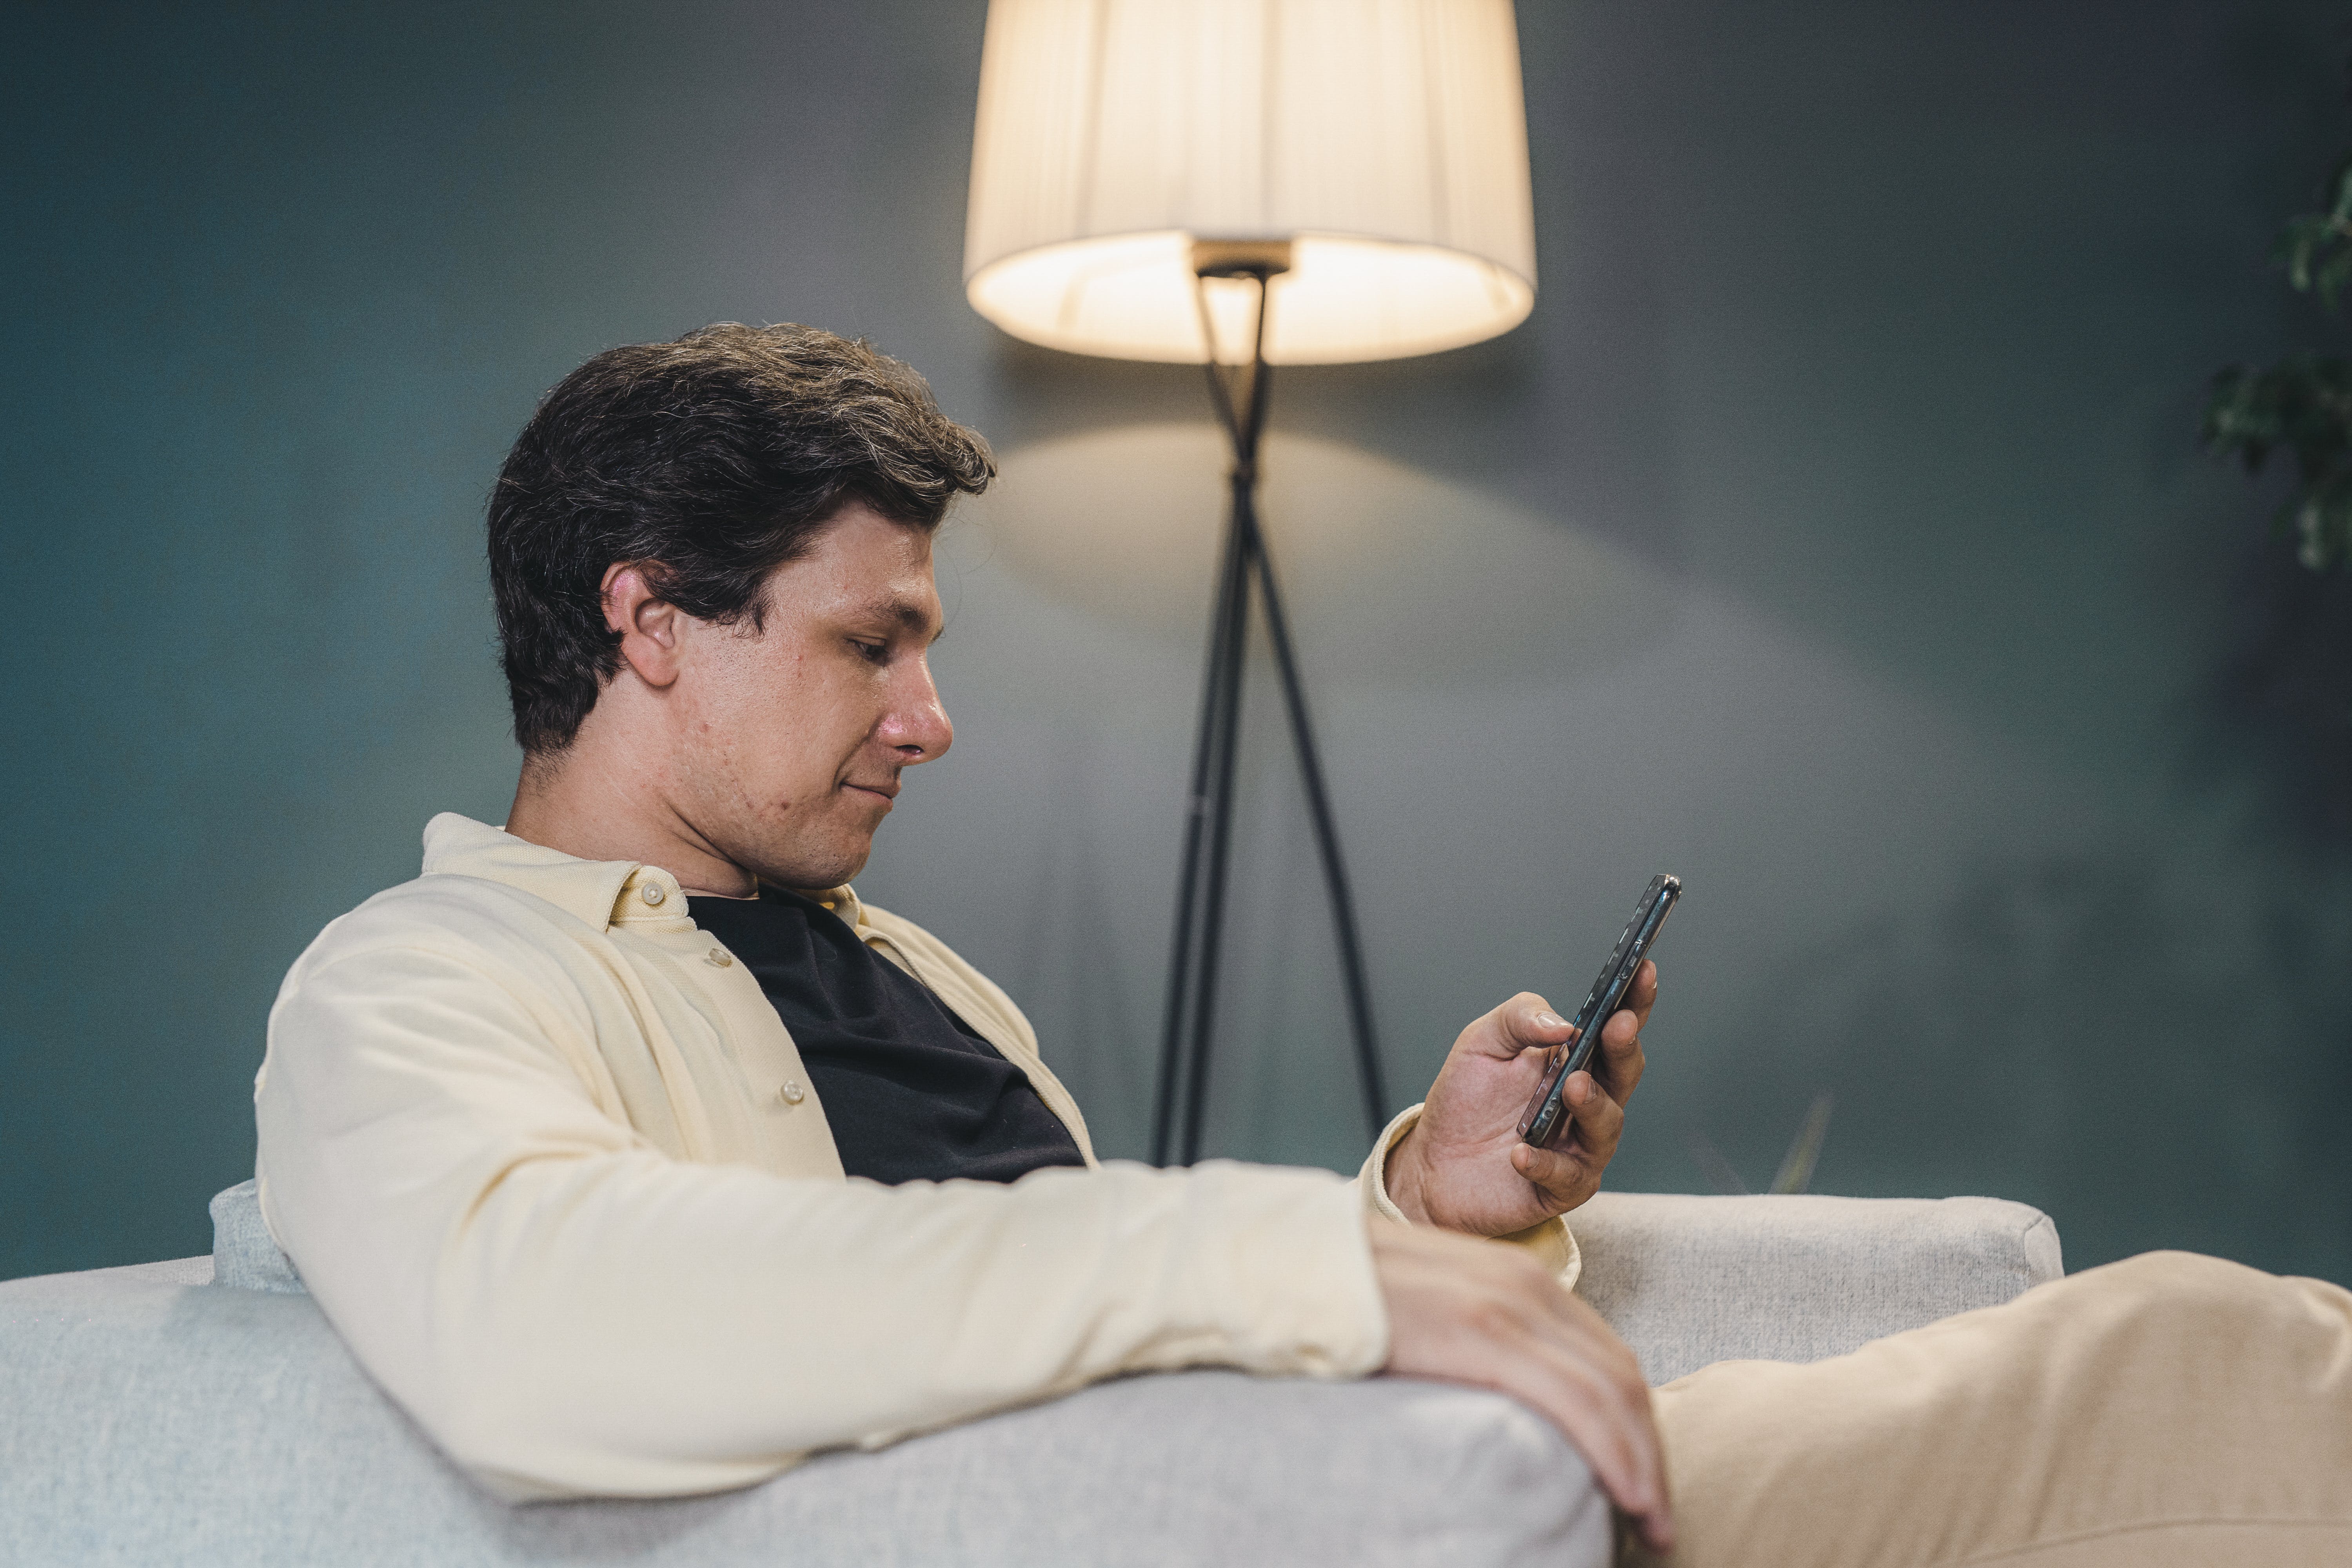 Ein Mann sitzt auf einem Sofa und benutzt ein Smartphone | Quelle: Pexels